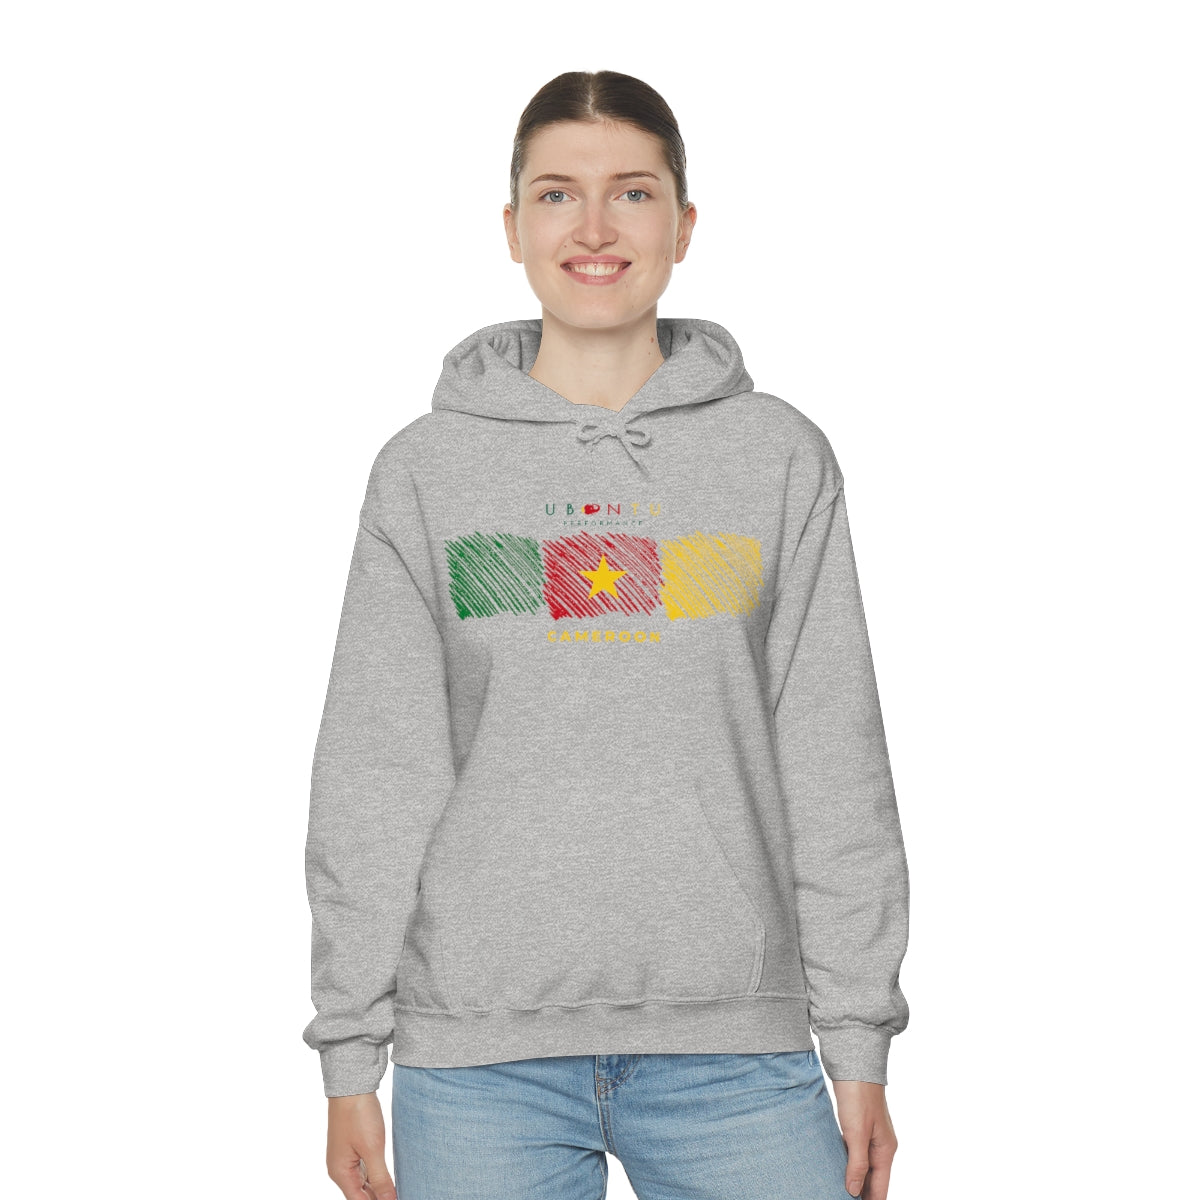 Cameroon flag colors Men's  Hooded Sweatshirt soccer football fan gift hoodie